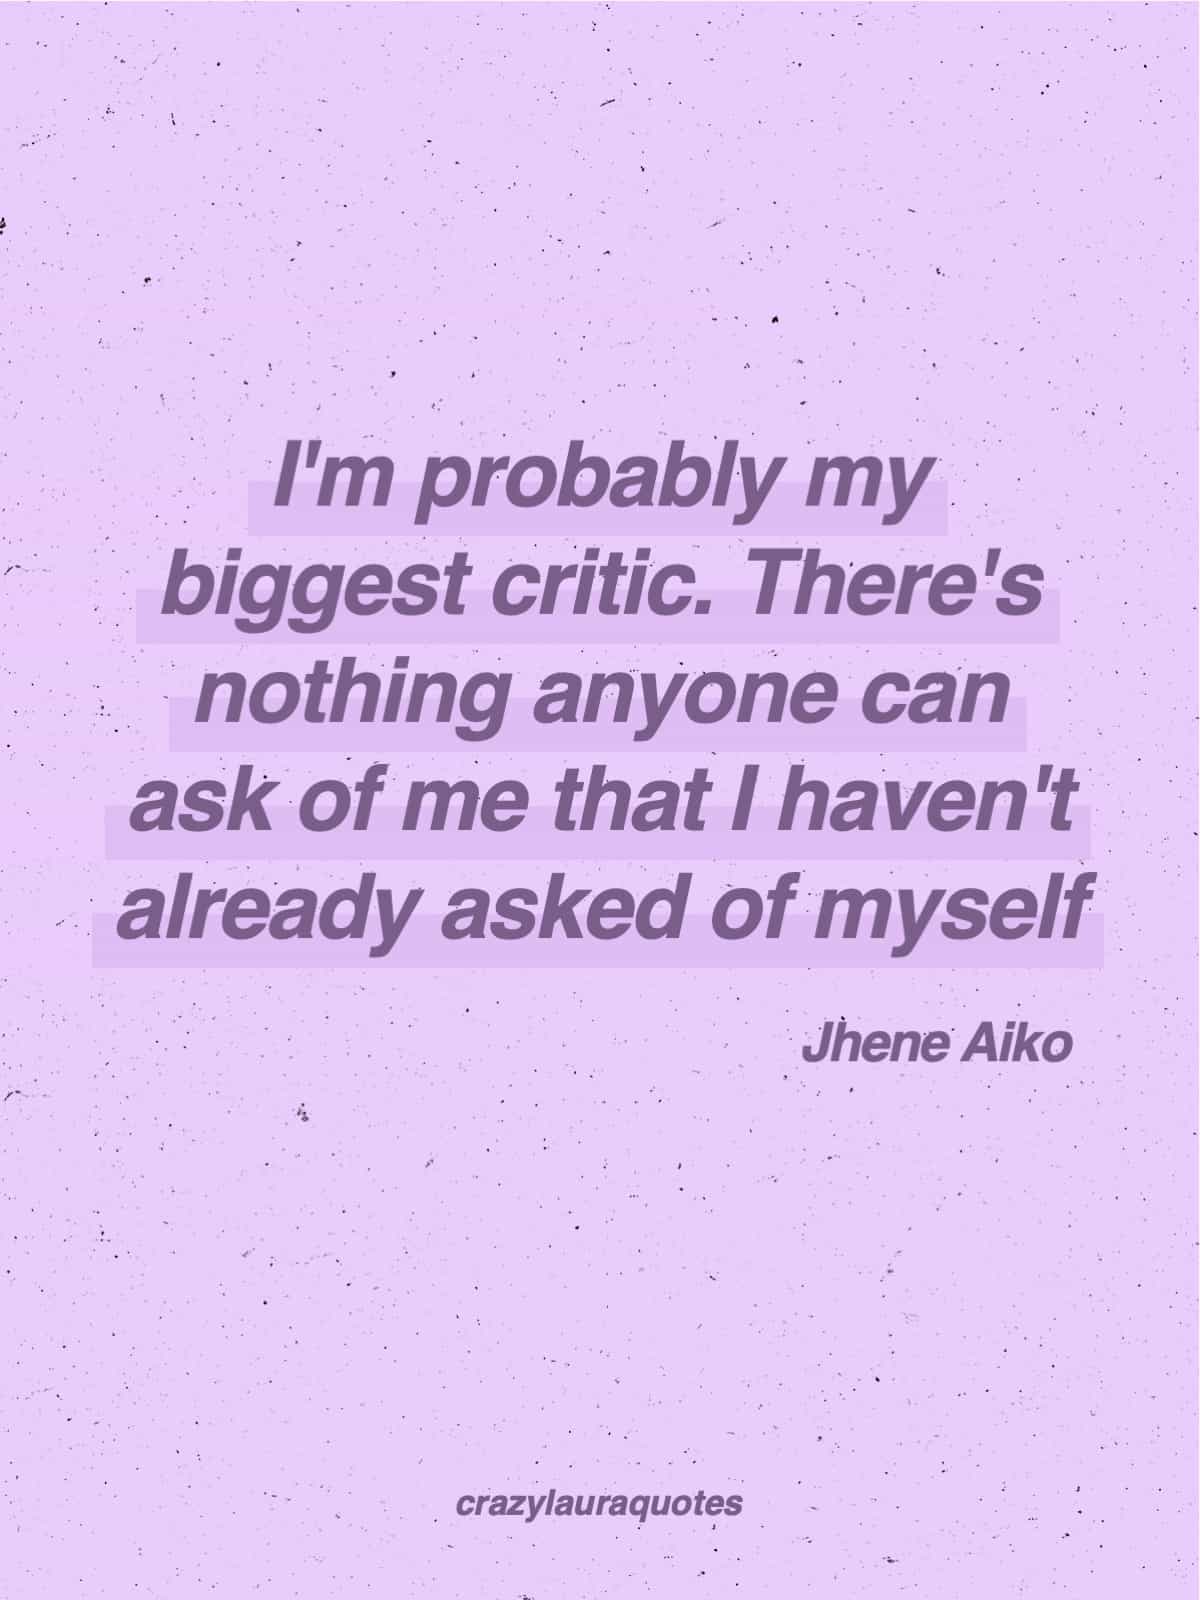 self critical jhene life quote